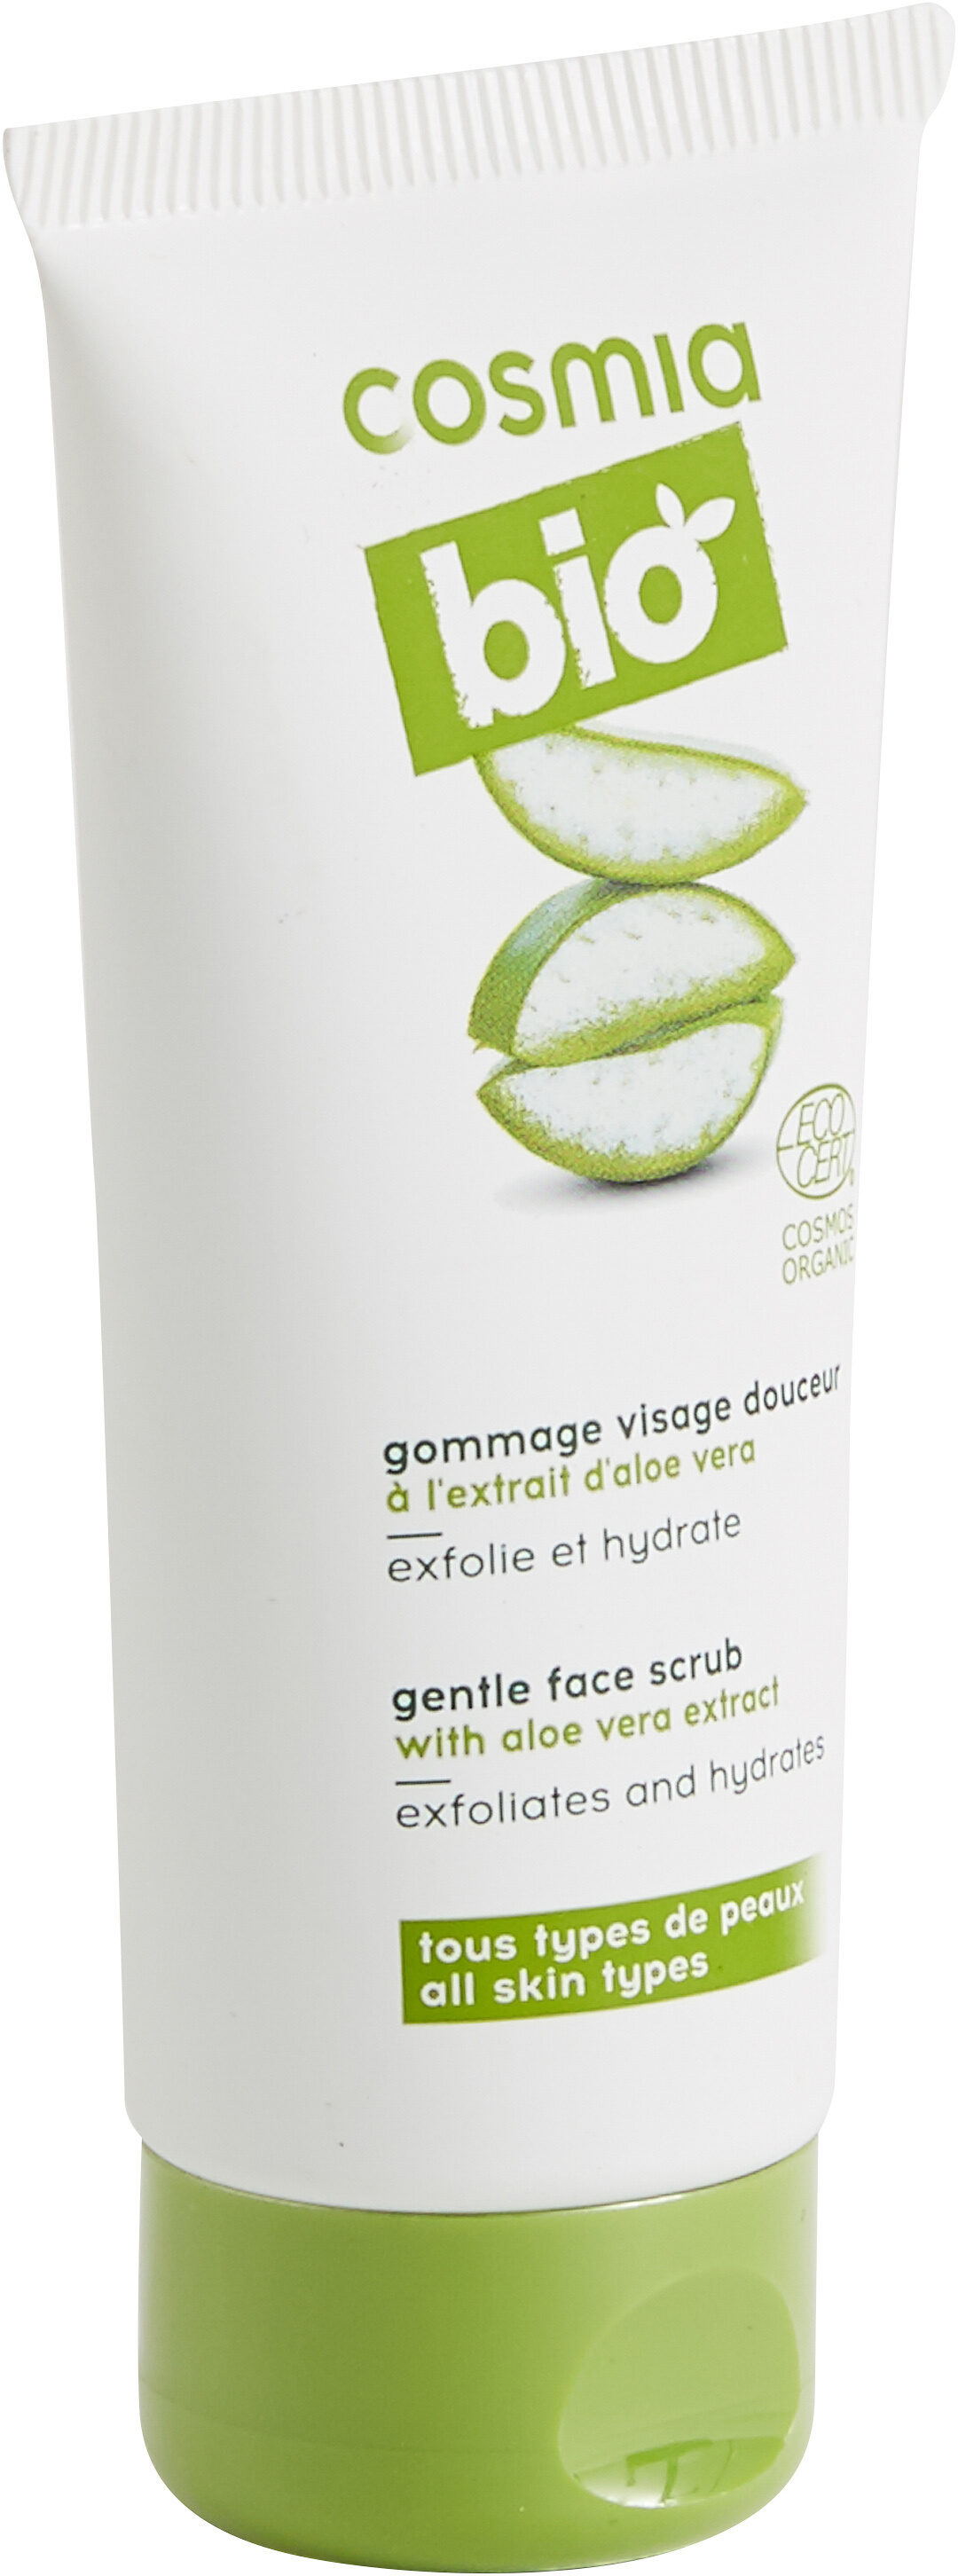 Cosmia Bio Gommage visage douceur, à l'extrait d'aloe vera, exfolie et hydrate, tous types de peaux - Tuote - fr